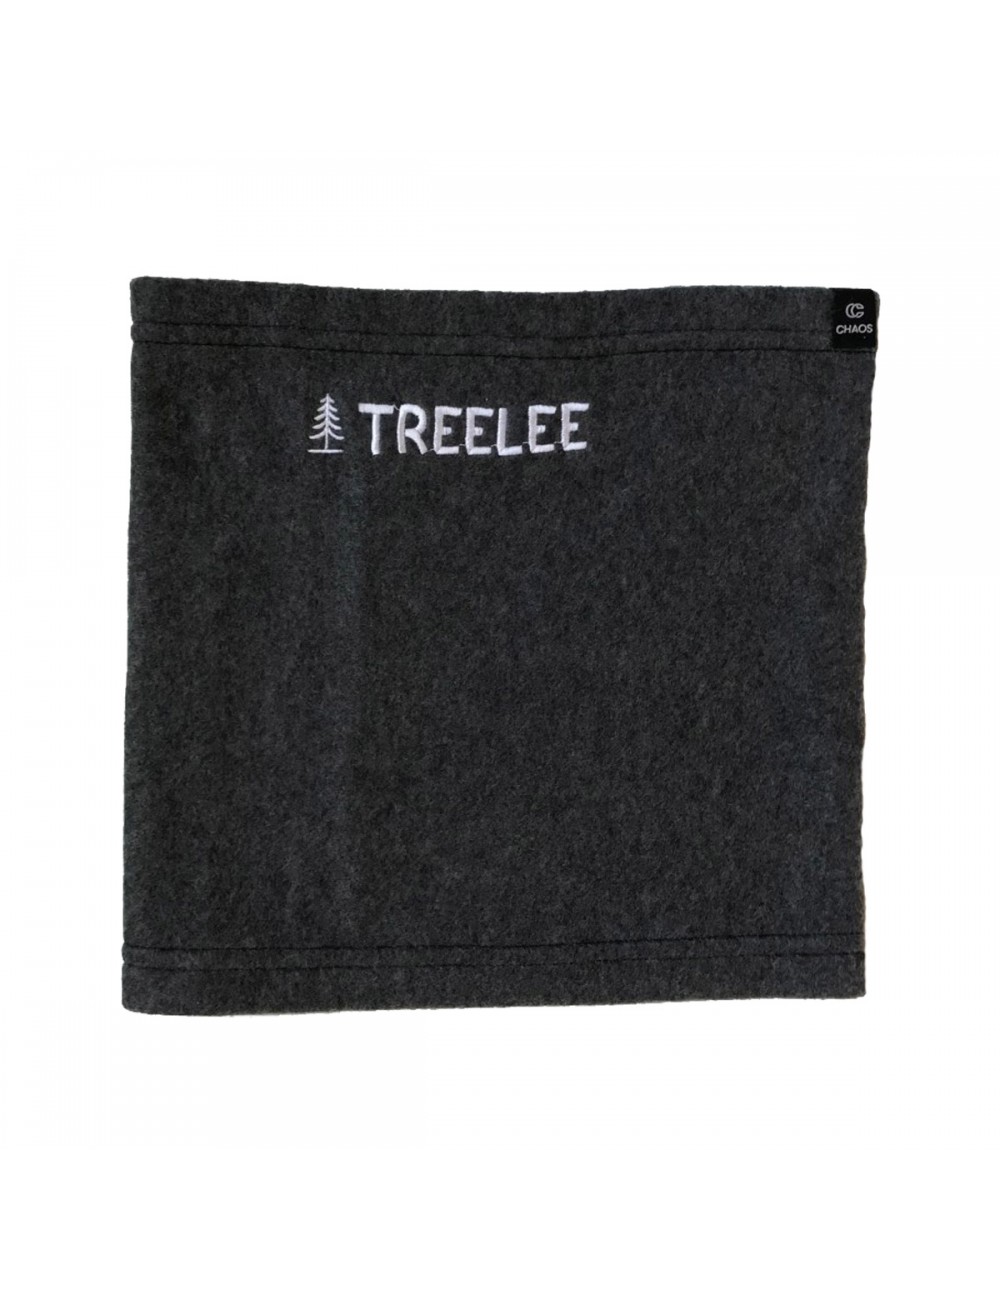 TreeLee Fleece Neckwarmer - Grey